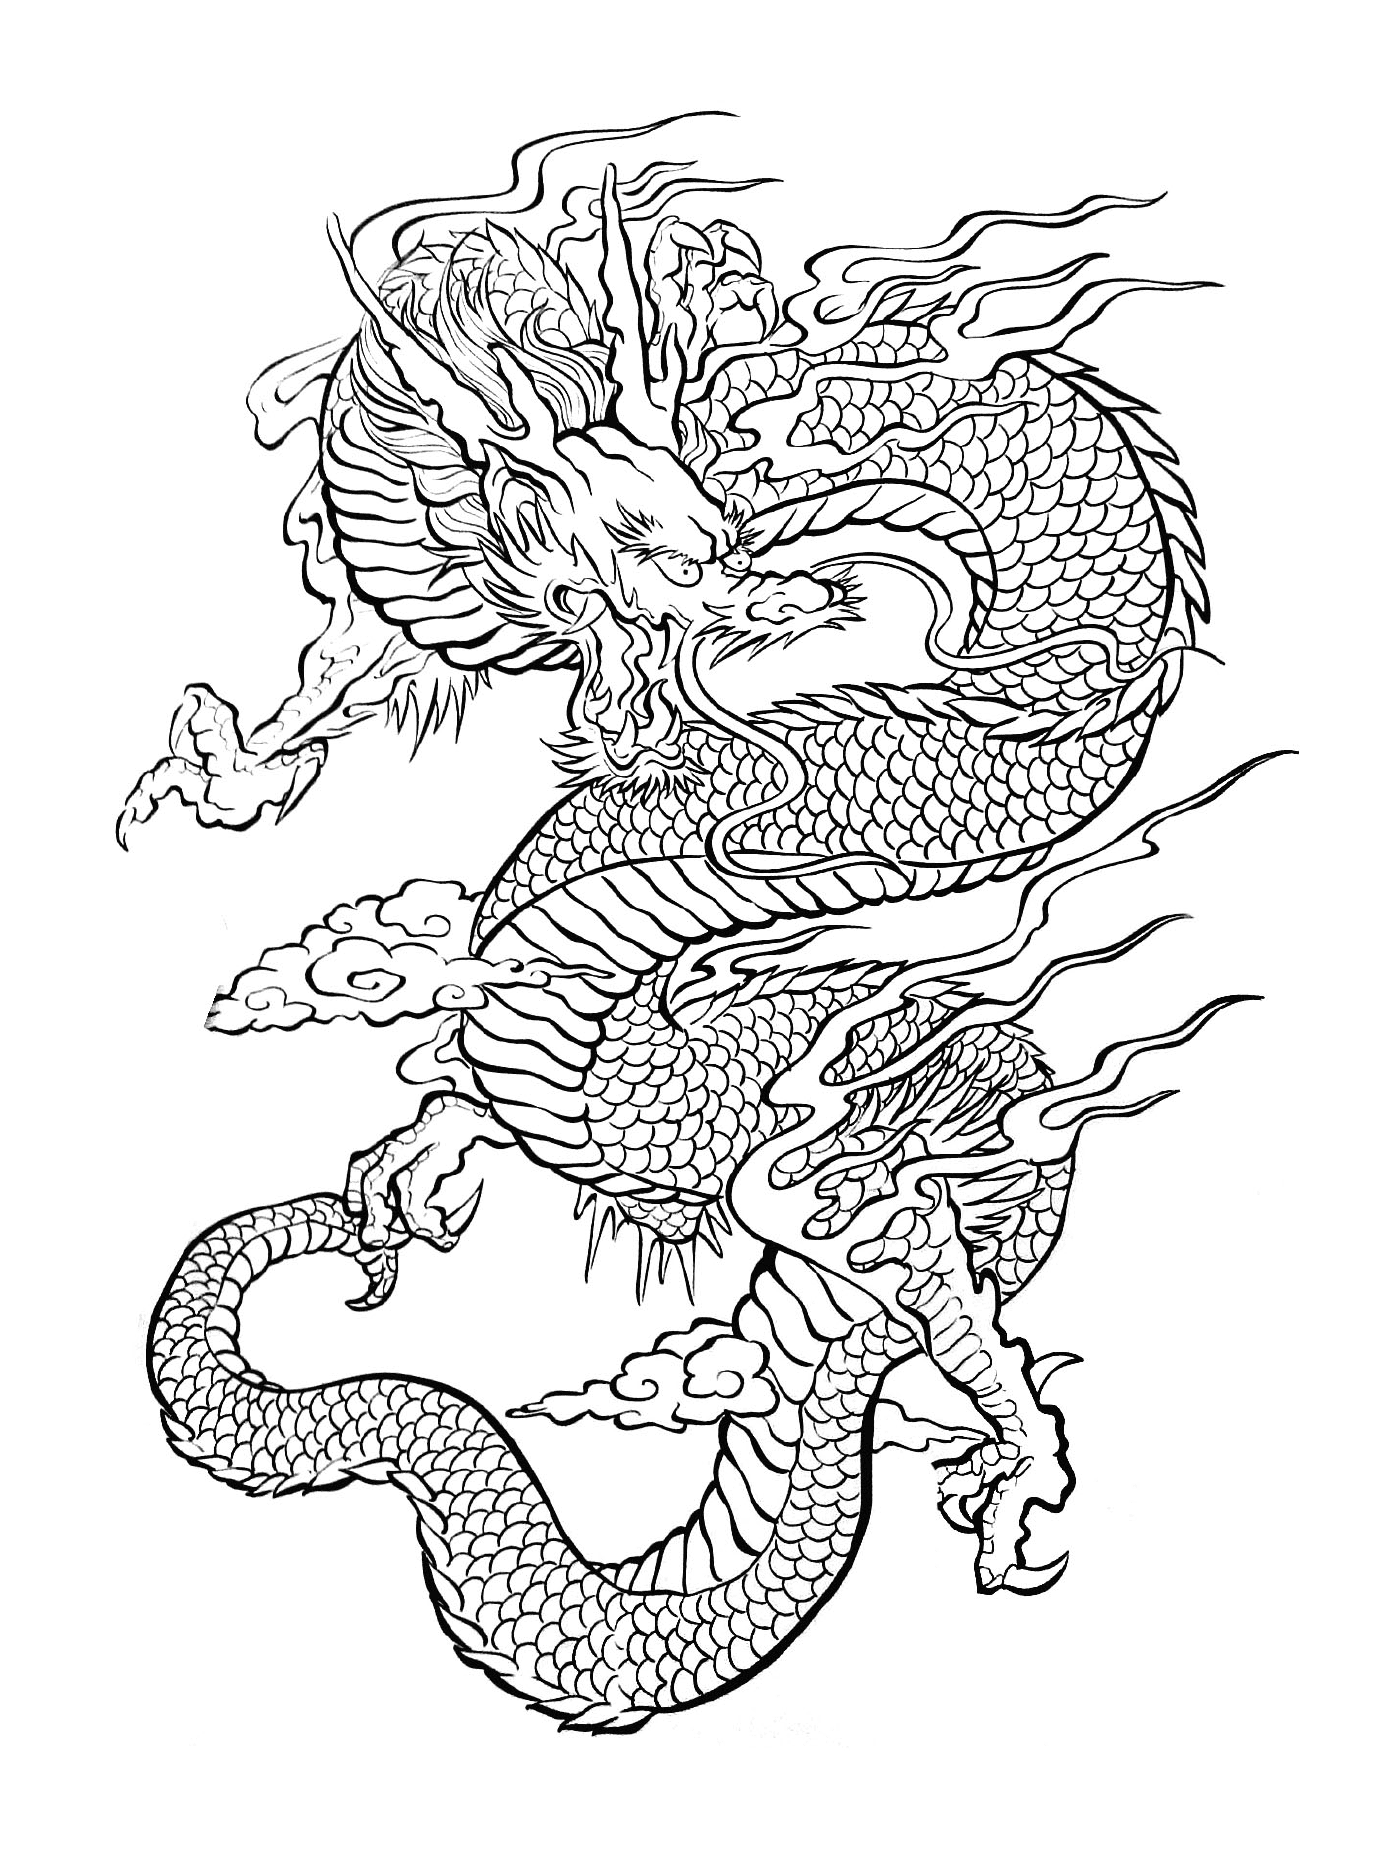  Uma ilustração de um dragão oriental voando no ar 